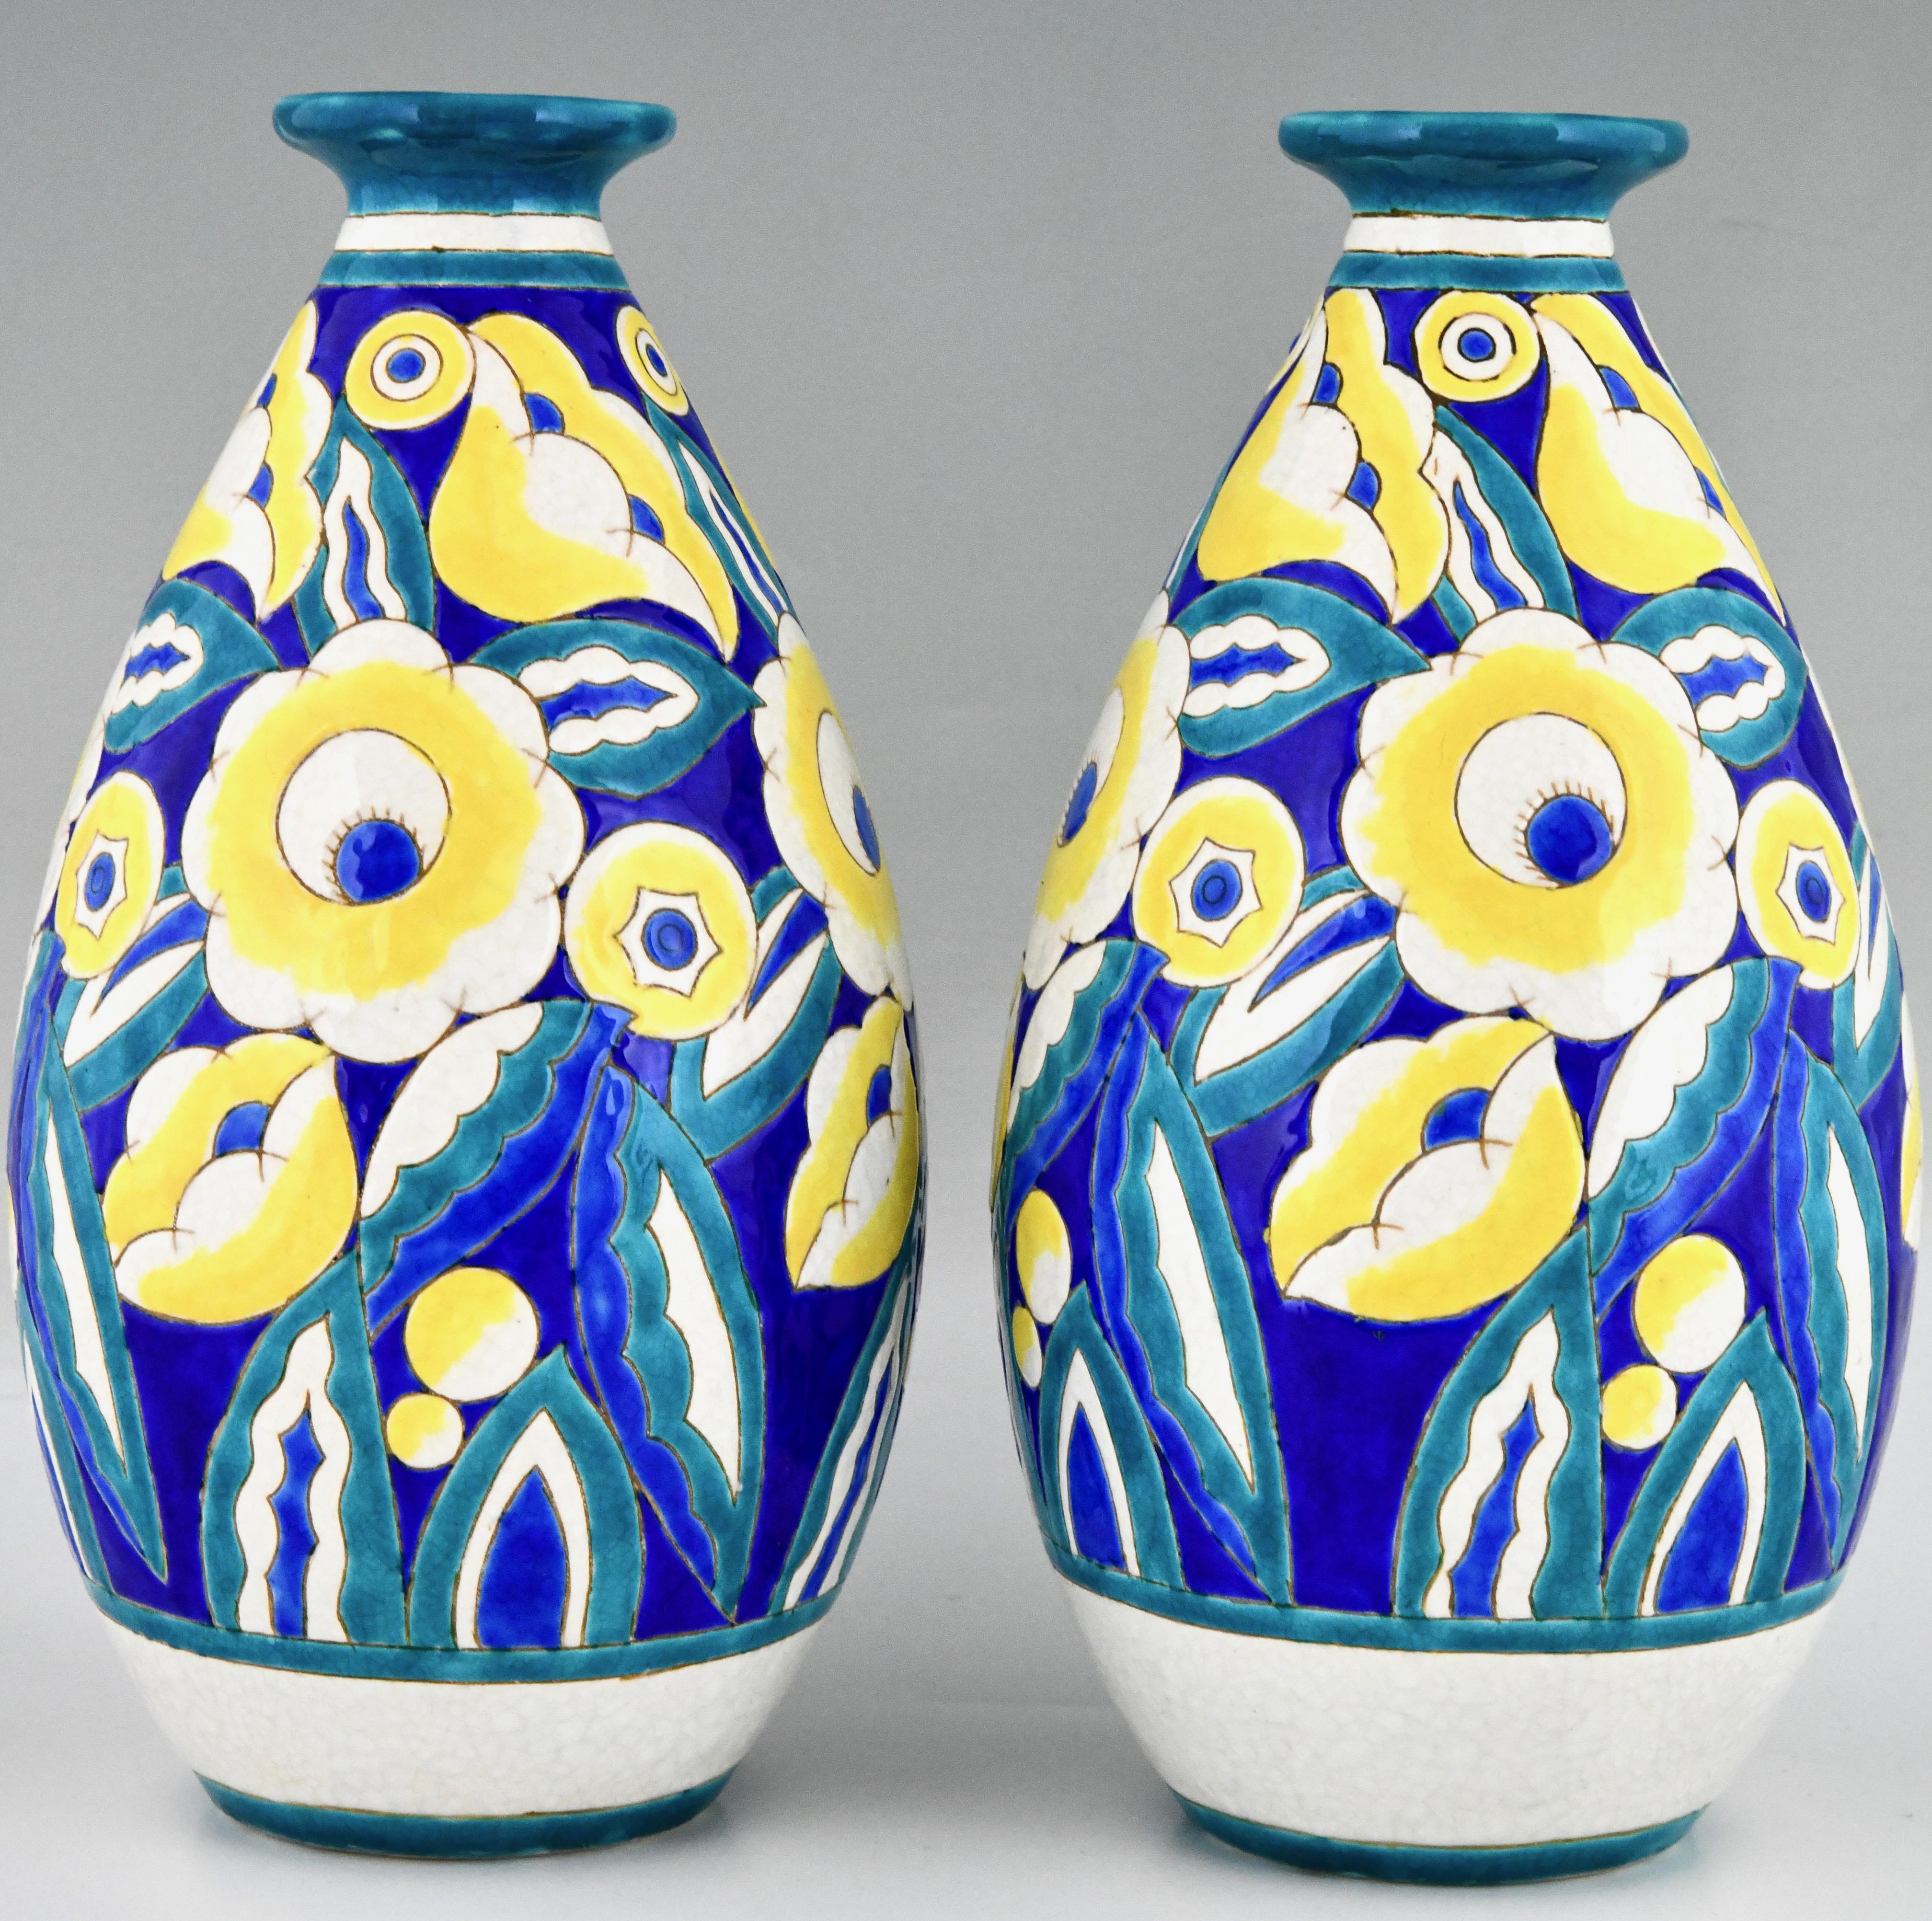 ceramic vases for flowers